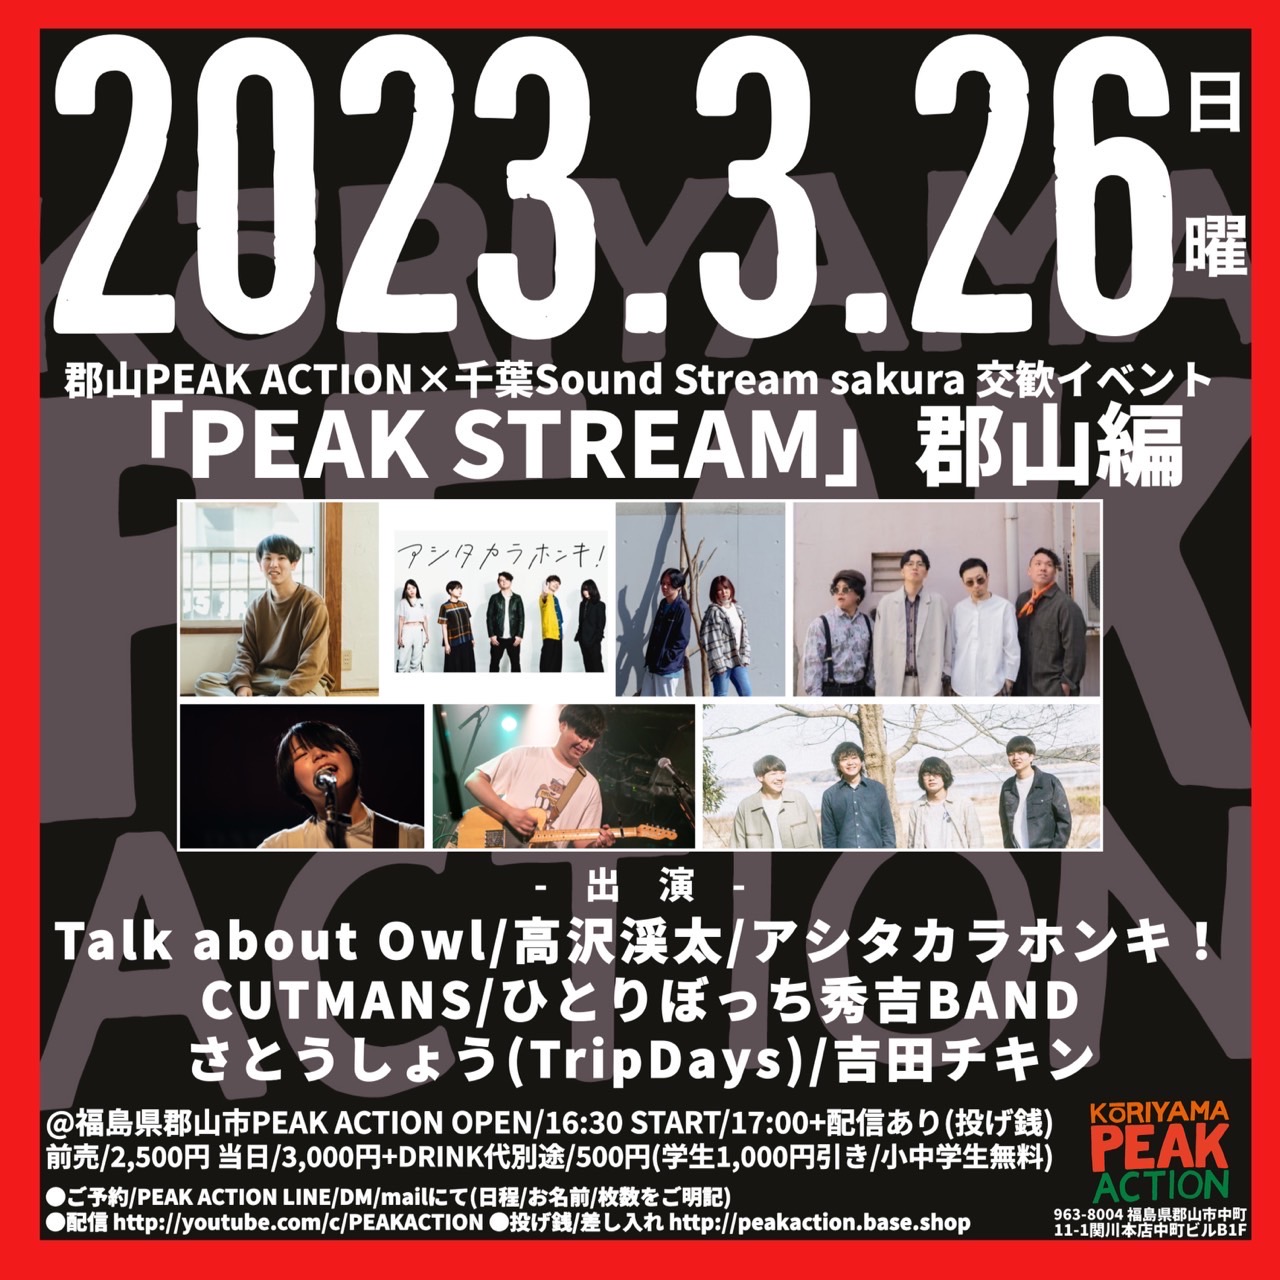 【弾き語り】郡山PEAK ACTION×千葉Sound Stream sakura 交歓イベント “PEAK STREAM”郡山編